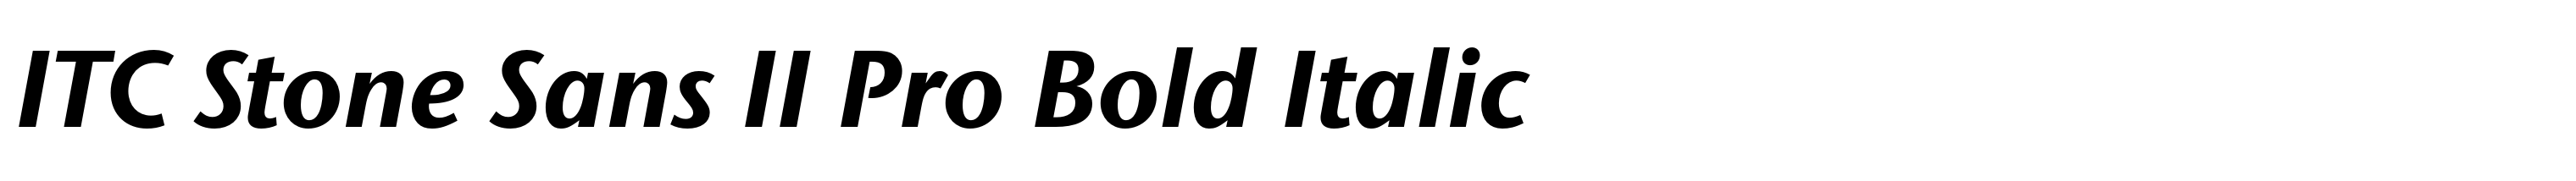 ITC Stone Sans II Pro Bold Italic